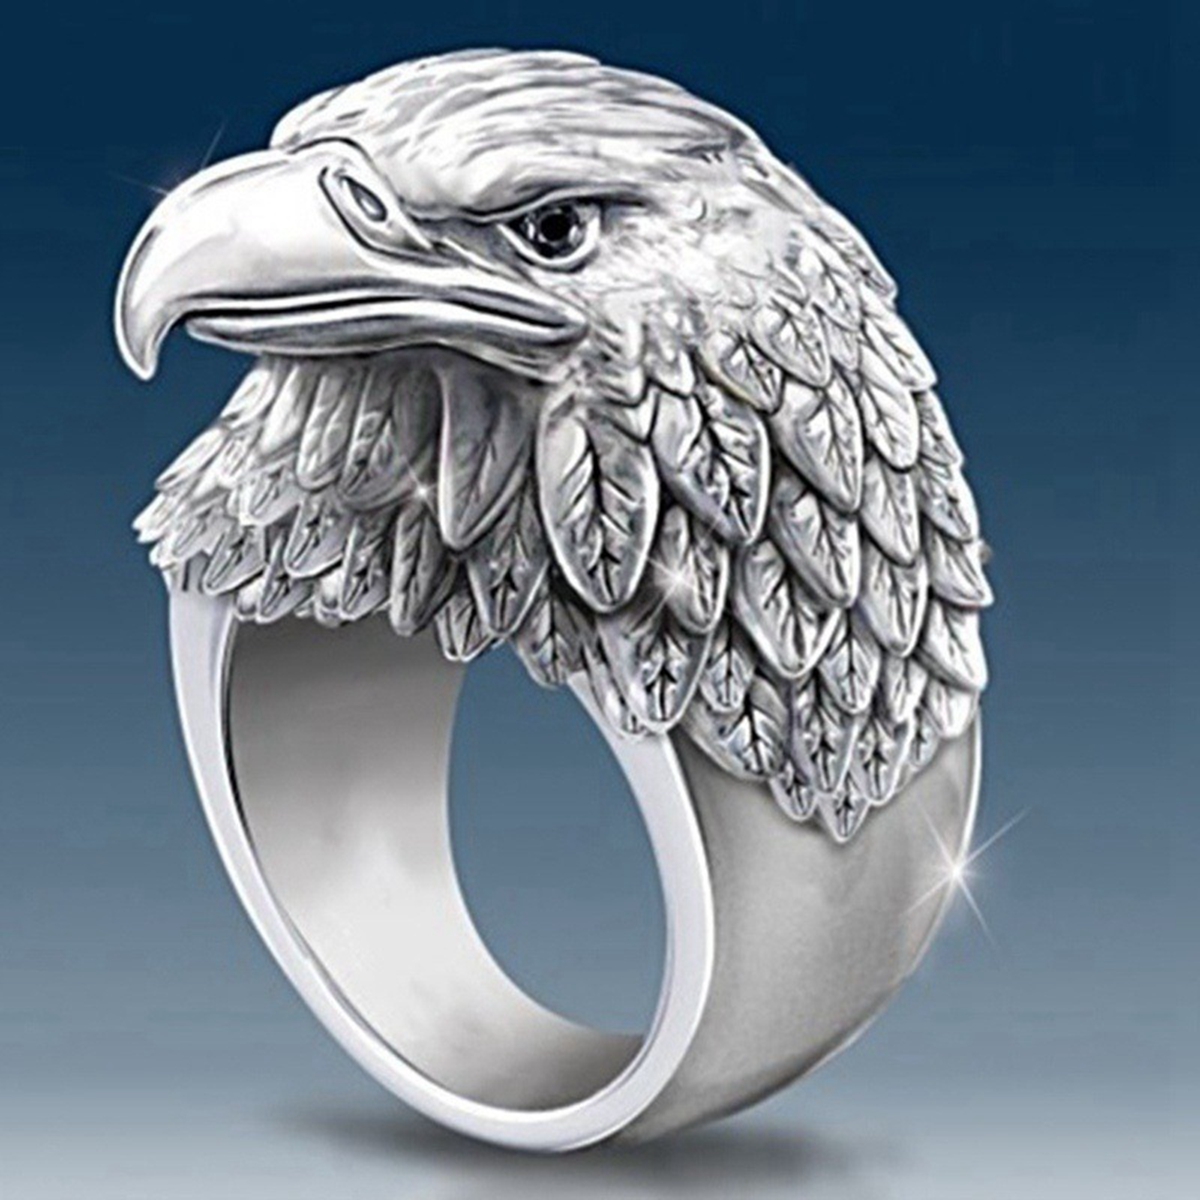 10 Stück Heißer Verkauf Mode Legierung Adler Ring geeignet für europäische und amerikanische Männer Geburtstag Party Zubehör Ringe Größe 7-13 G-130